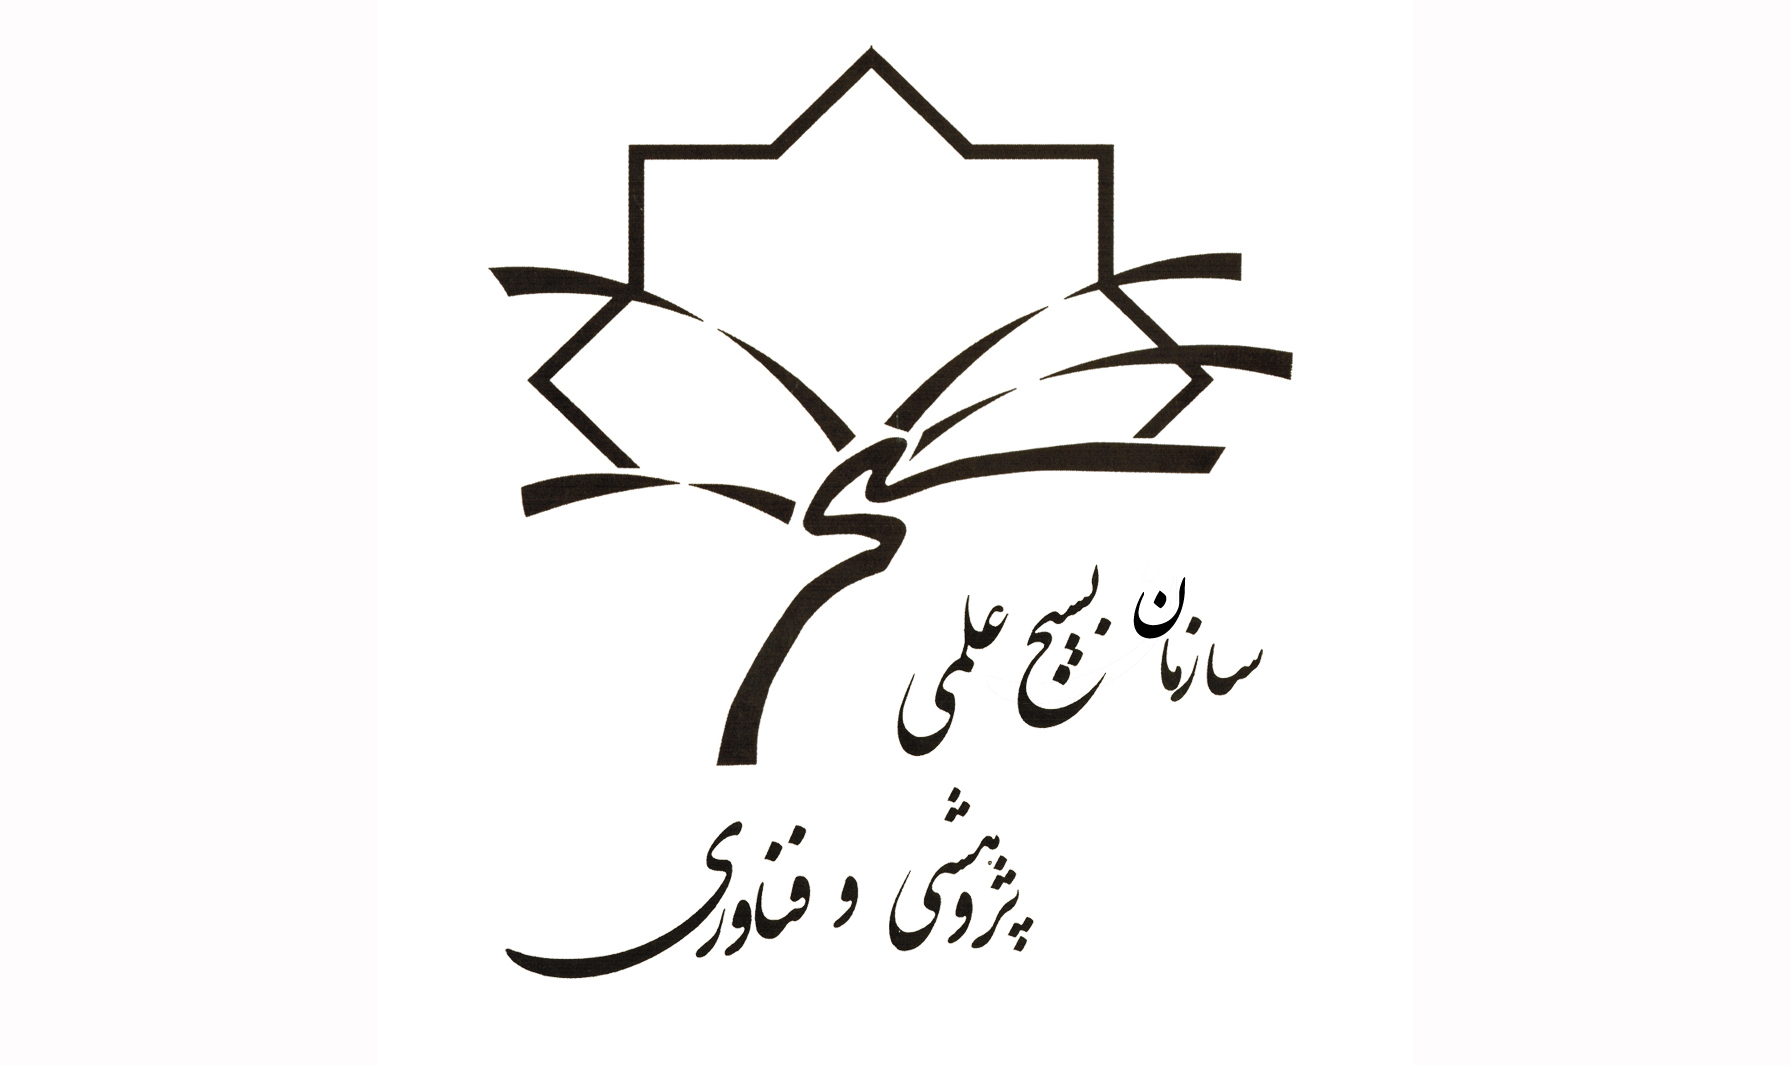 بیانیه پژوهشگران و نخبگان بسیجی در محکومیت حوادث تروریستی تهران